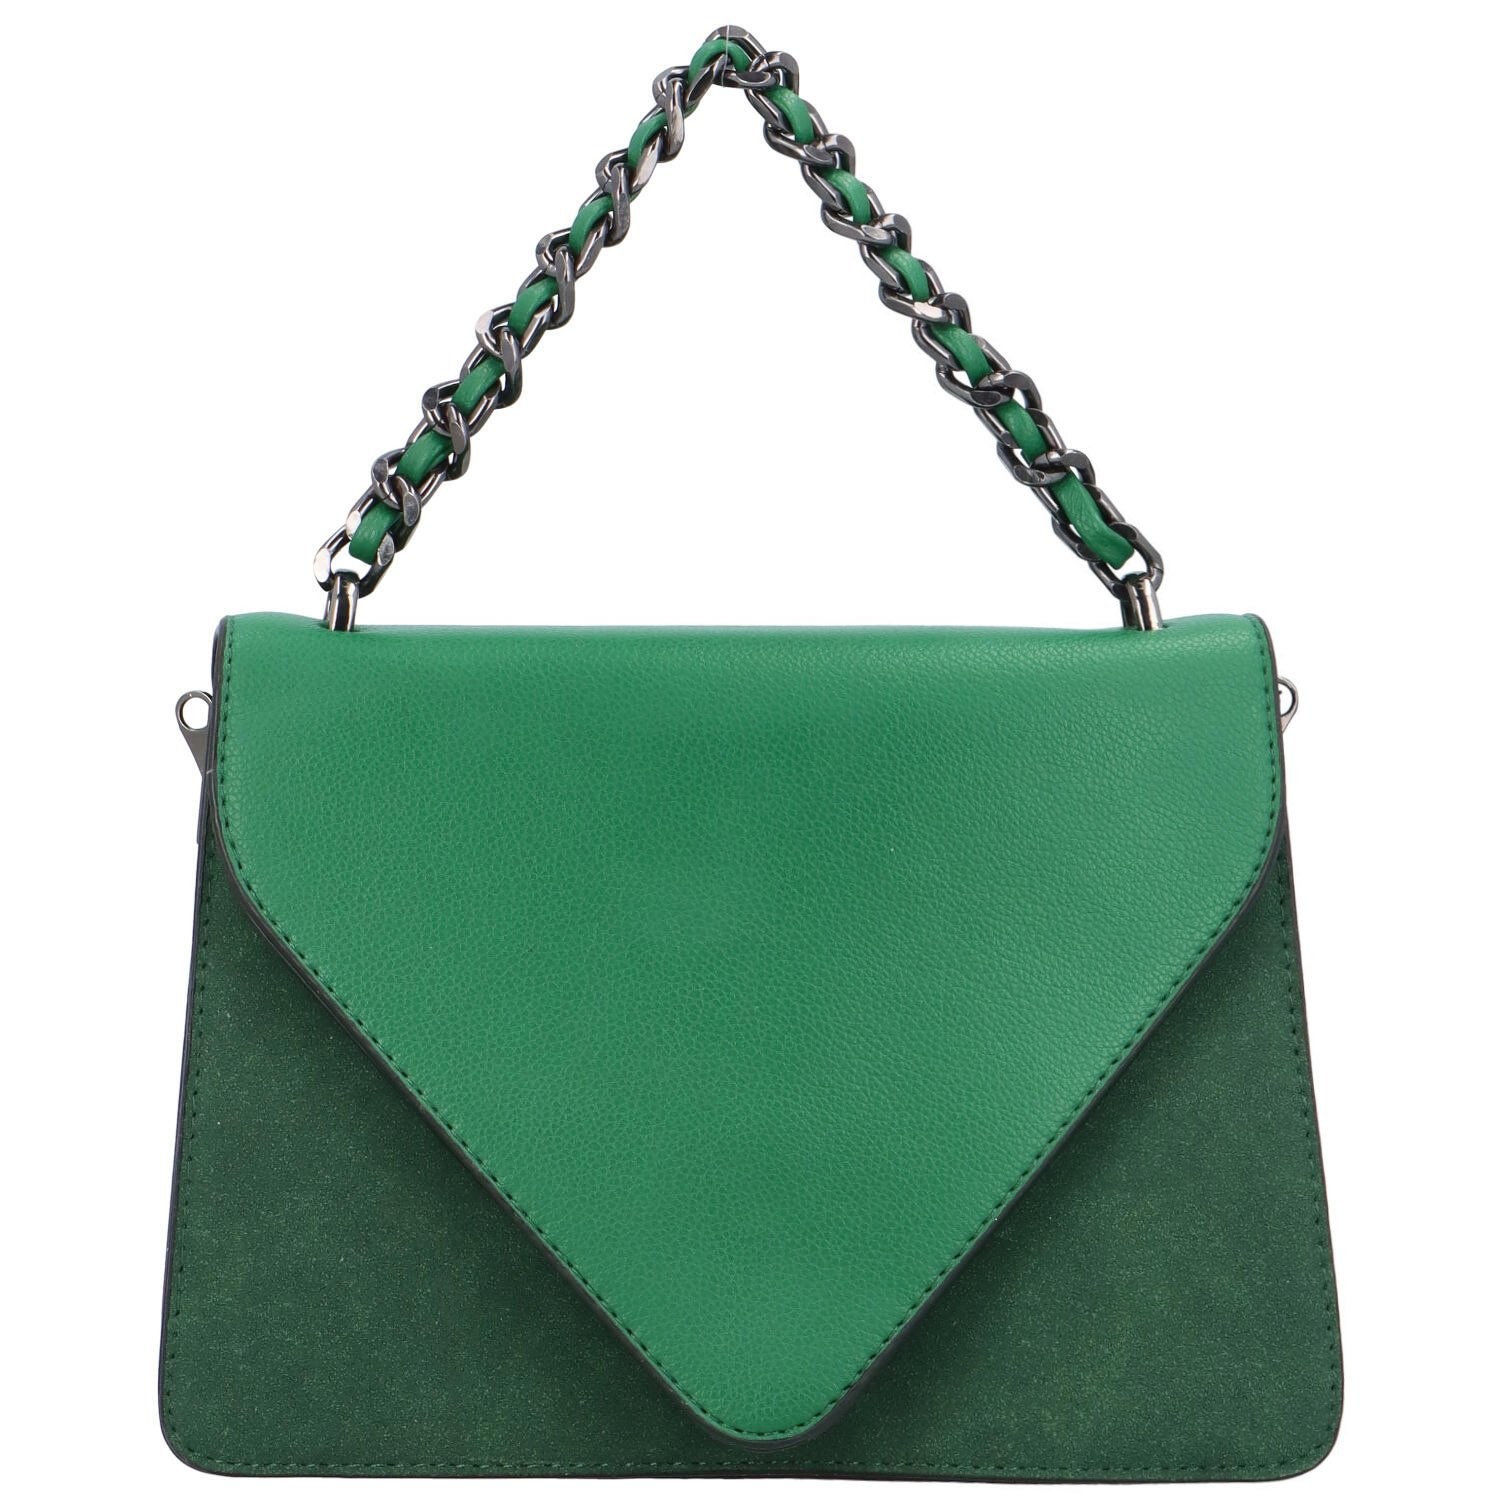 Dámská kabelka do ruky zelená - Maria C. Mikaela zelená